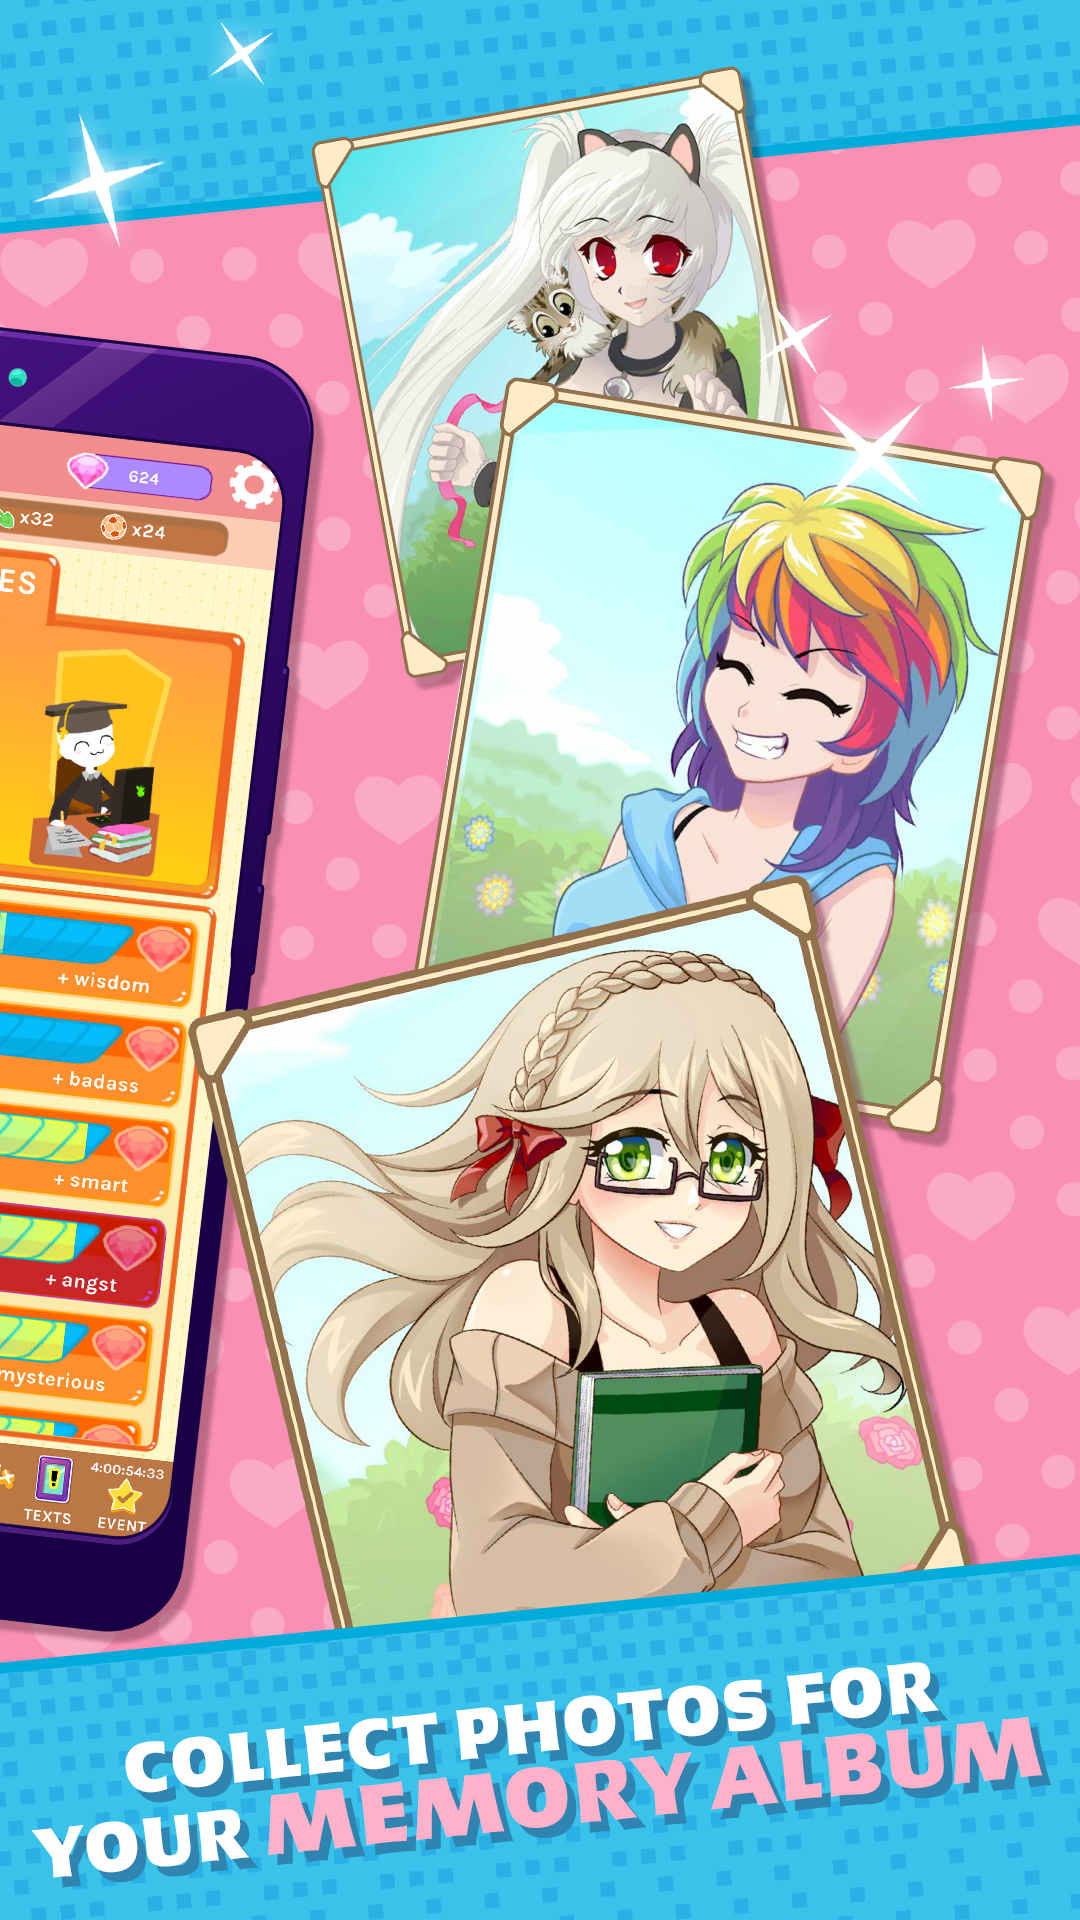 Screenshot of Crush Crush - Idle Dating Sim